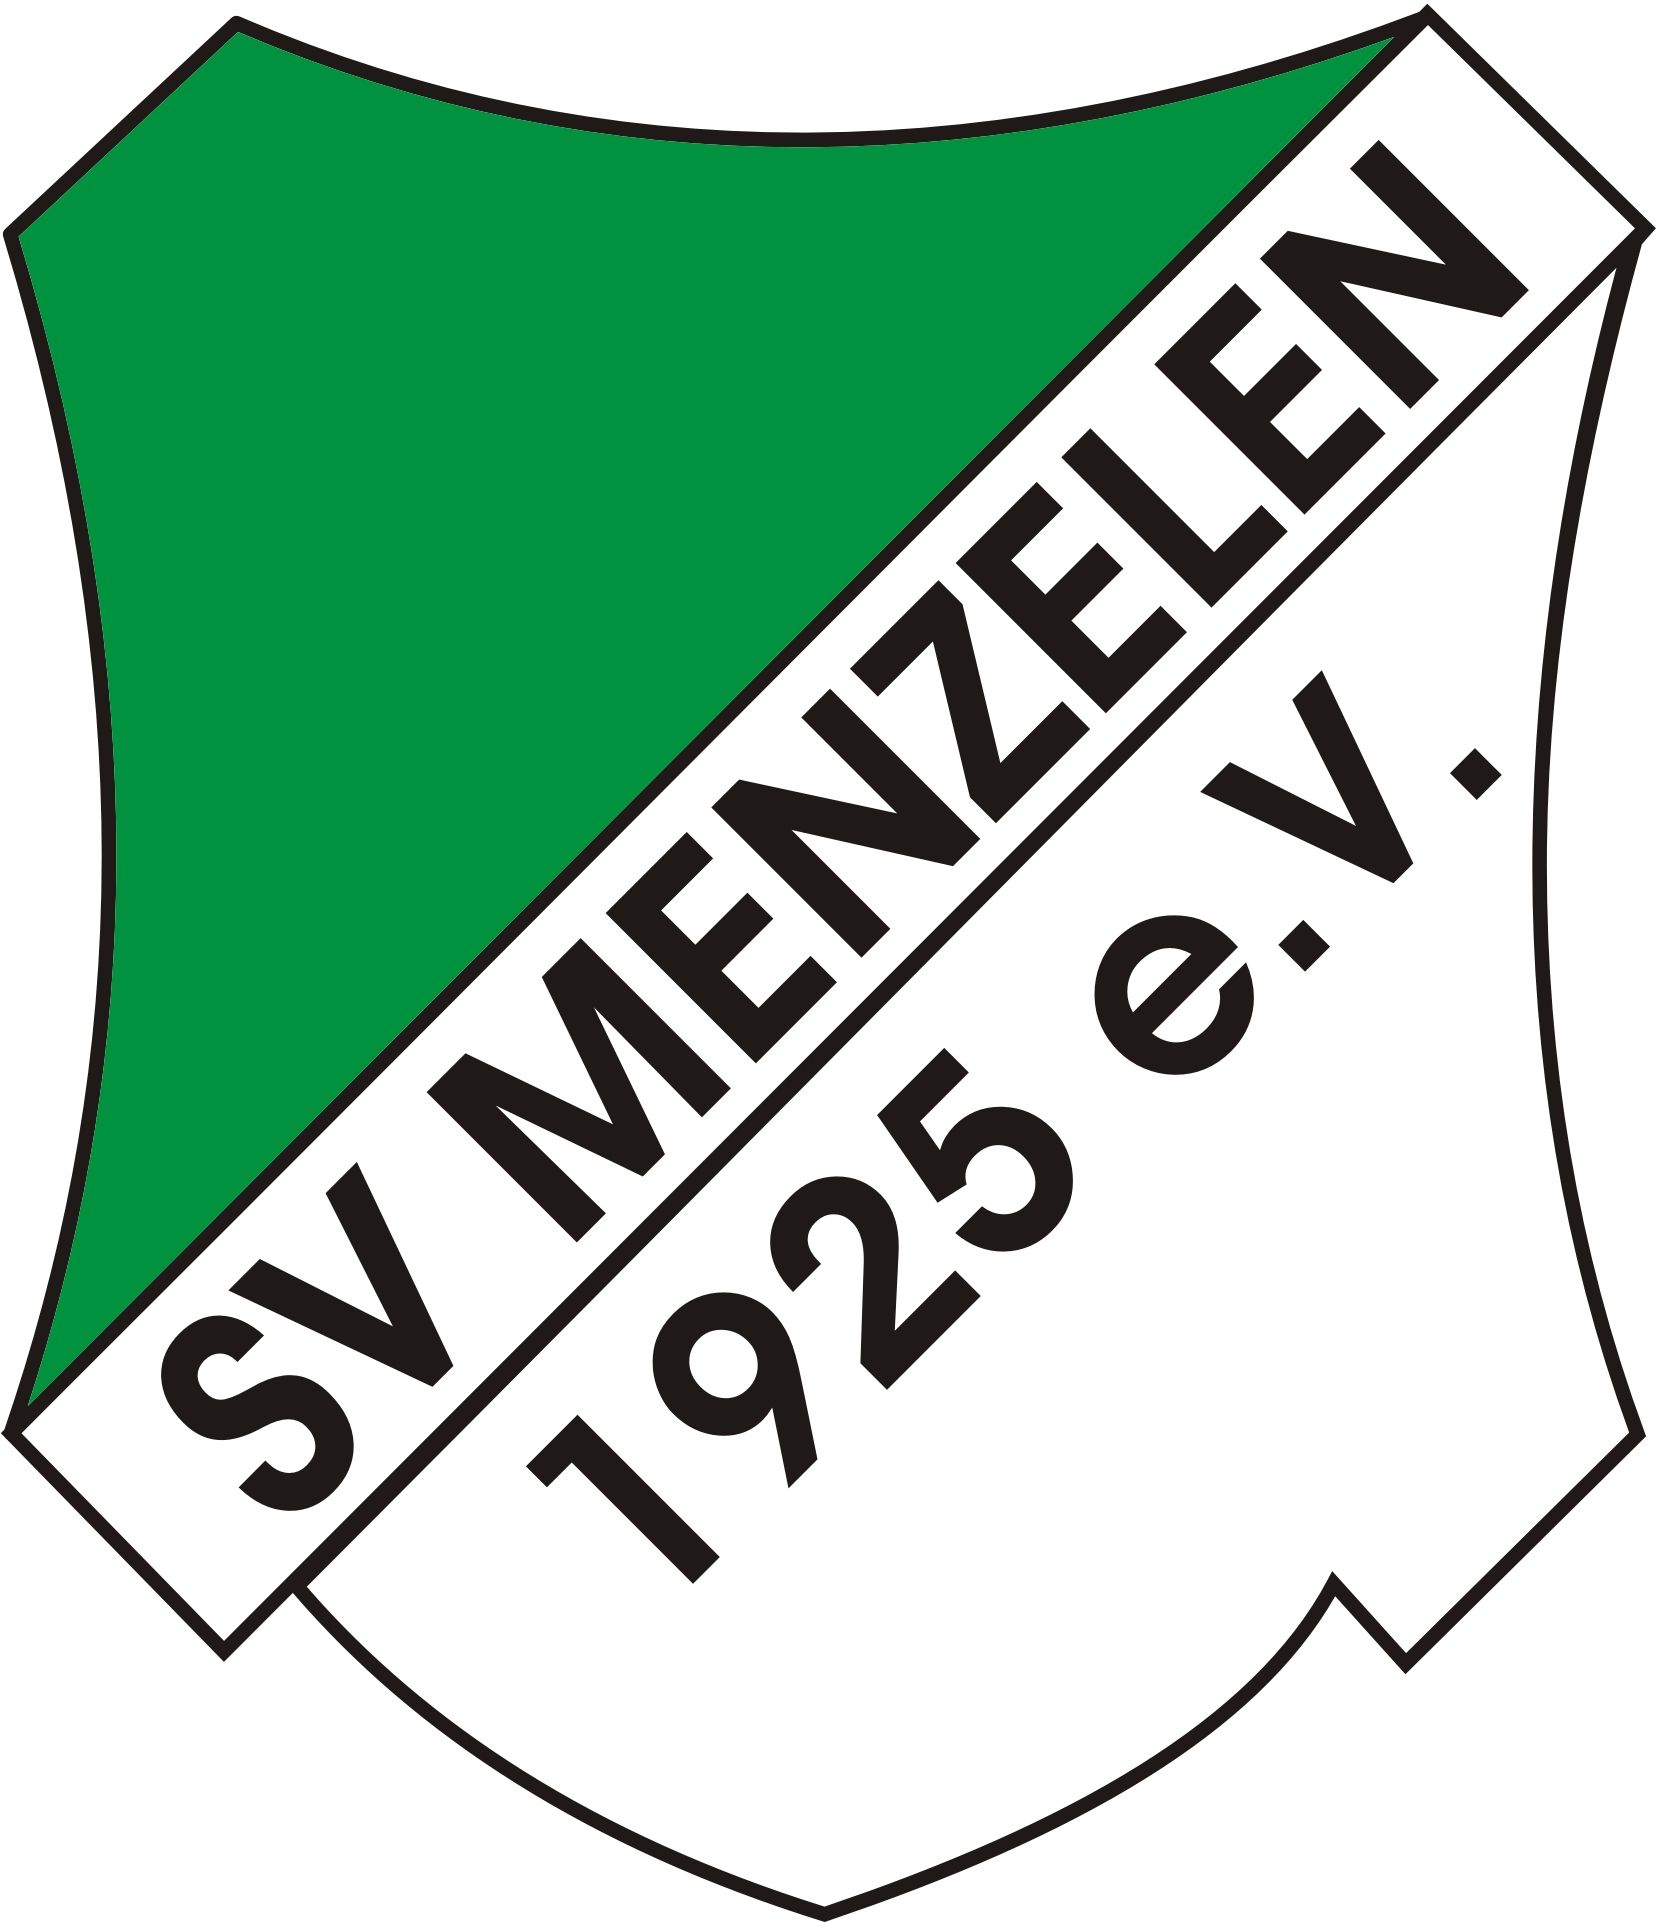 Wappen SV Menzelen 1925